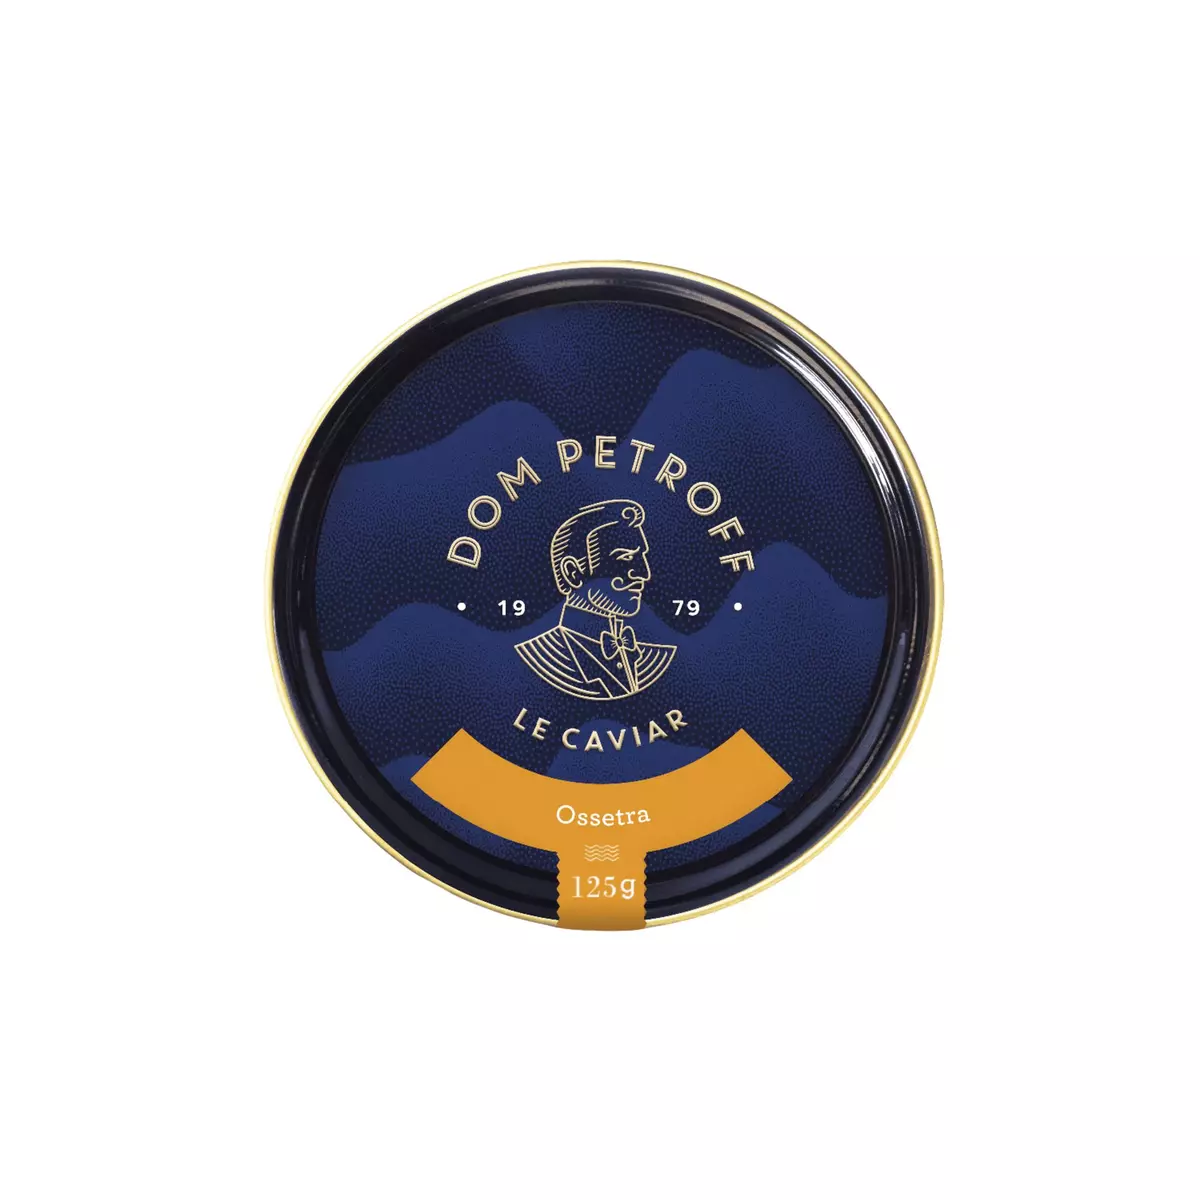 DOM PETROFF Caviar Ossetra 125g